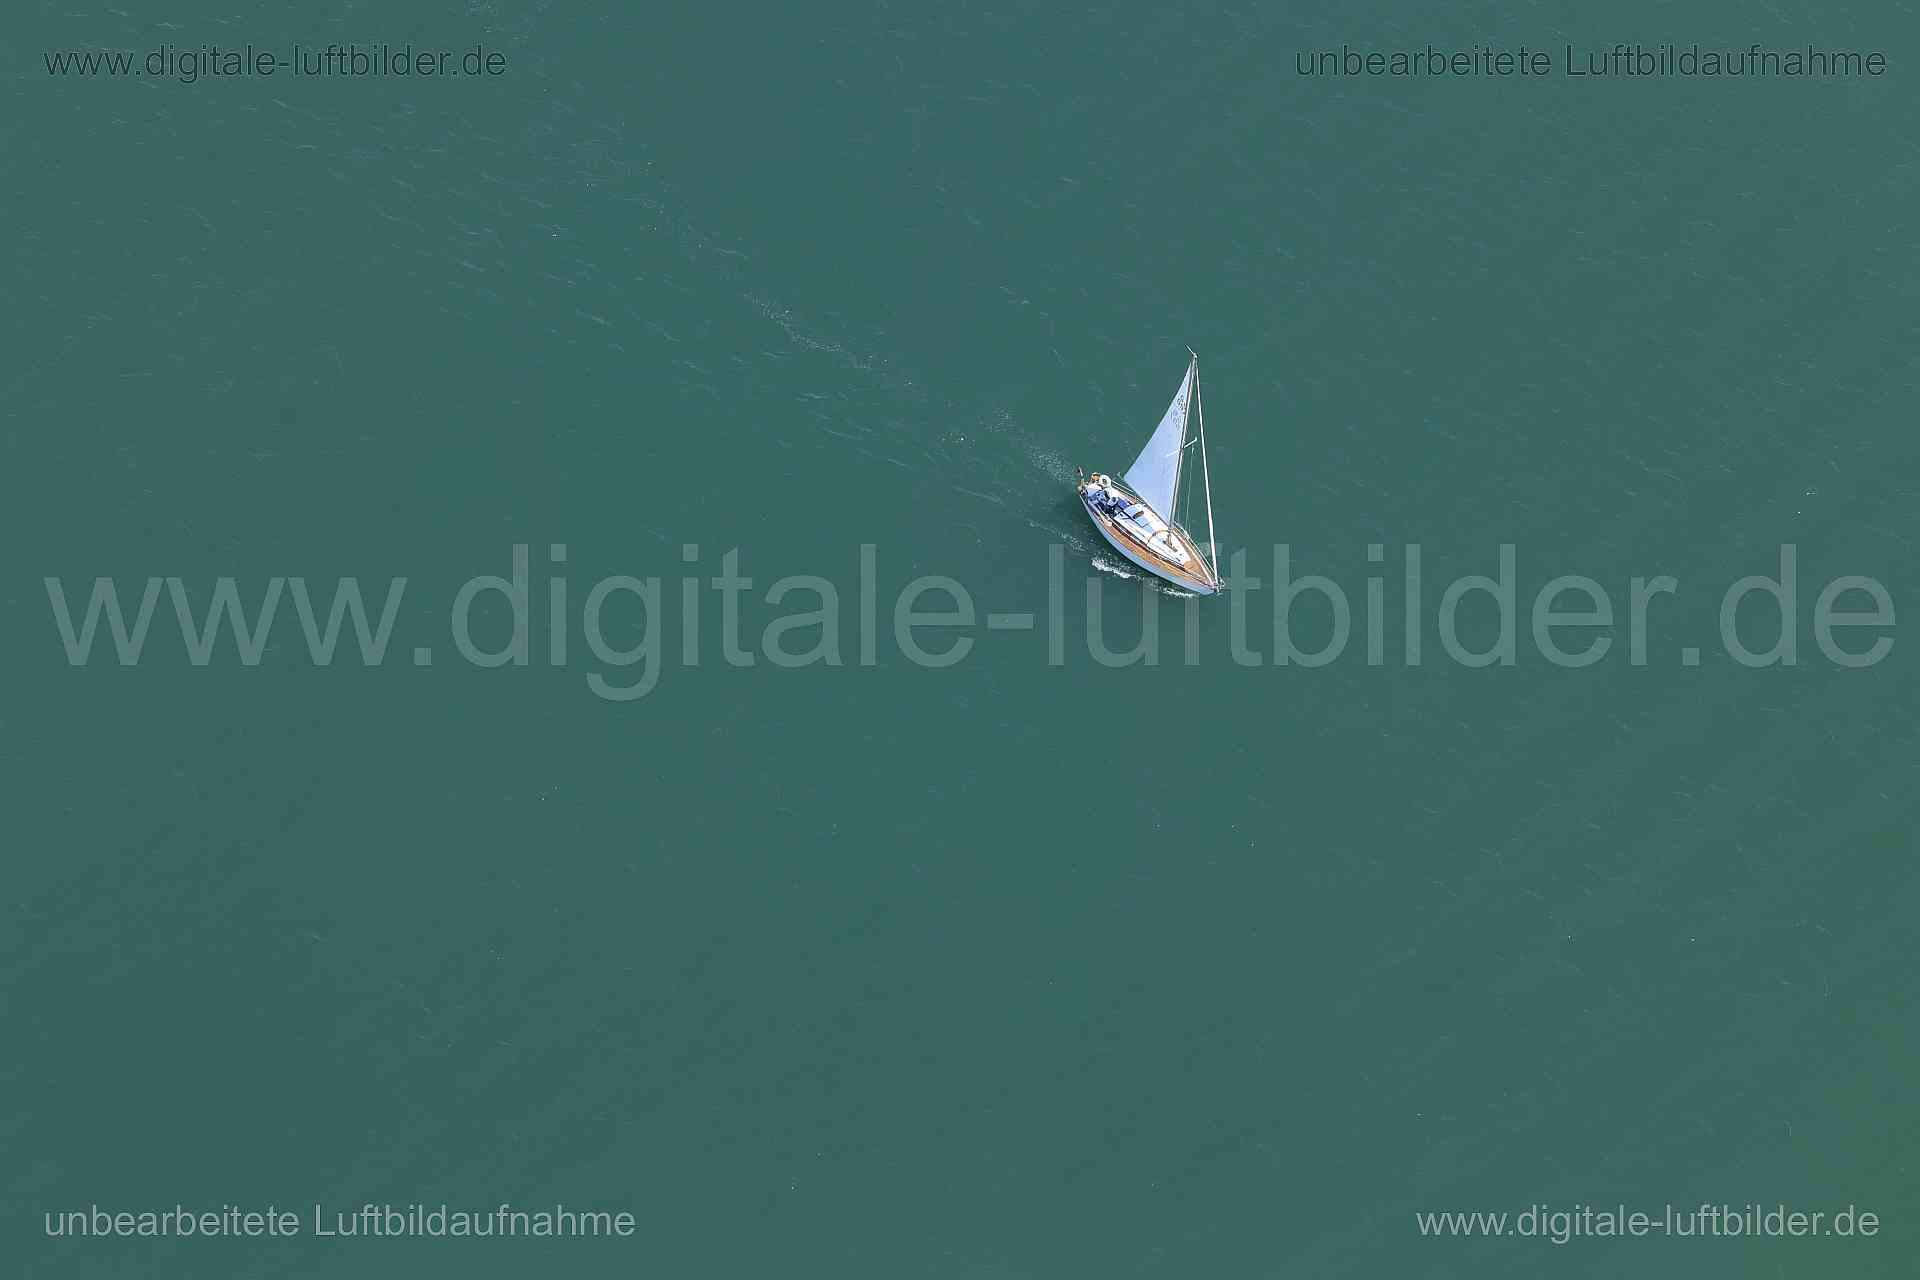 Luftbild - Segelboot am Bodensee, Ort: Friedrichshafen, Tags: Segelboot, Boot, Segel, Bodensee, Gewässer, ...